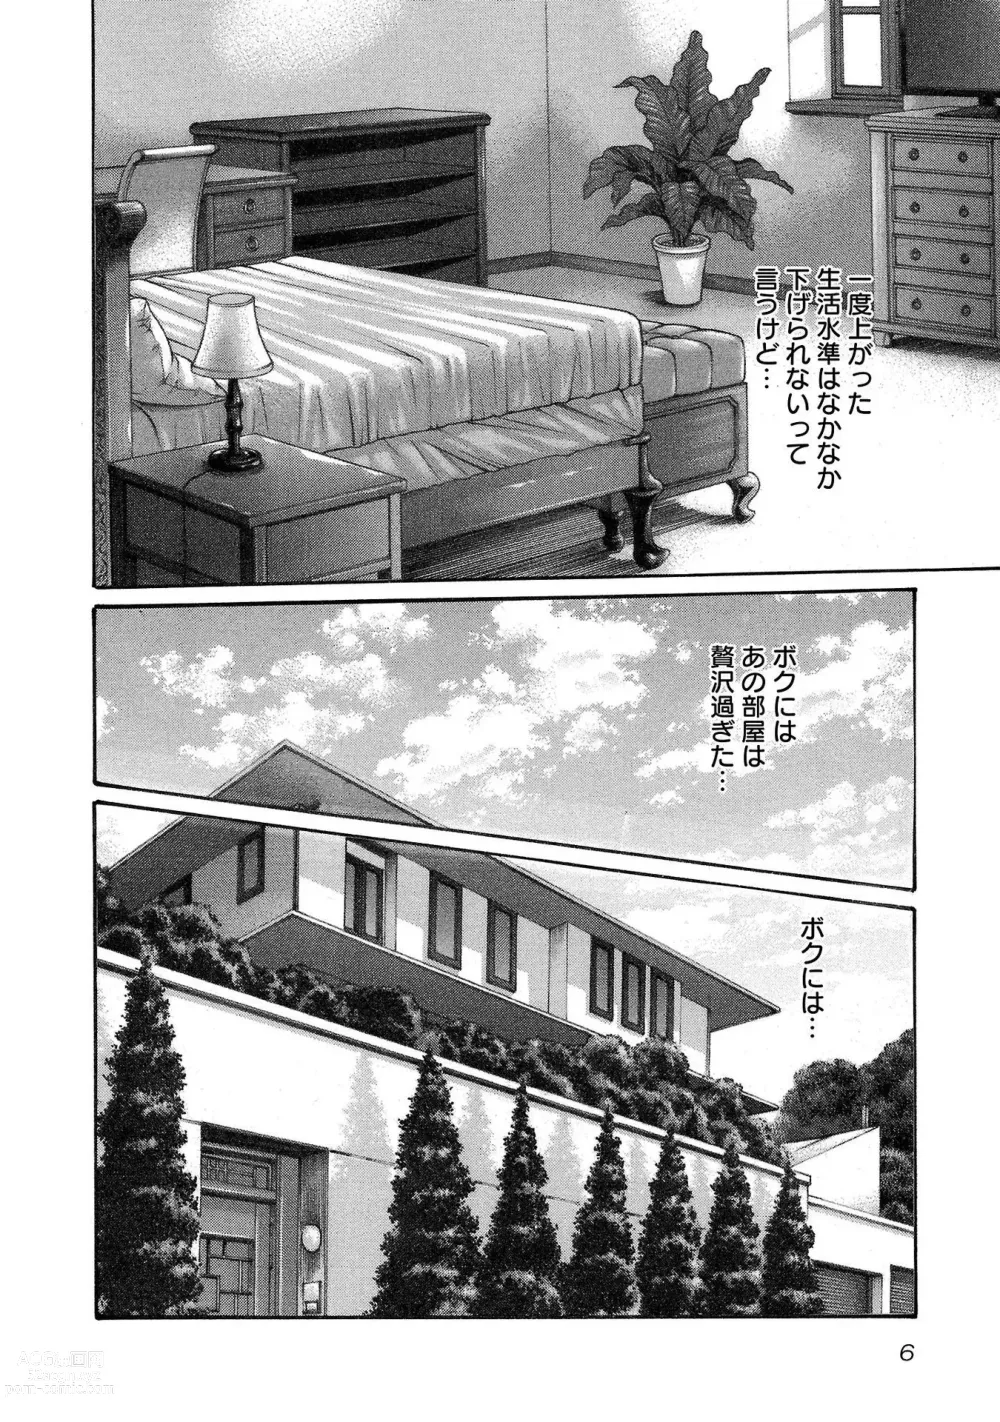 Page 7 of manga sense volume 13